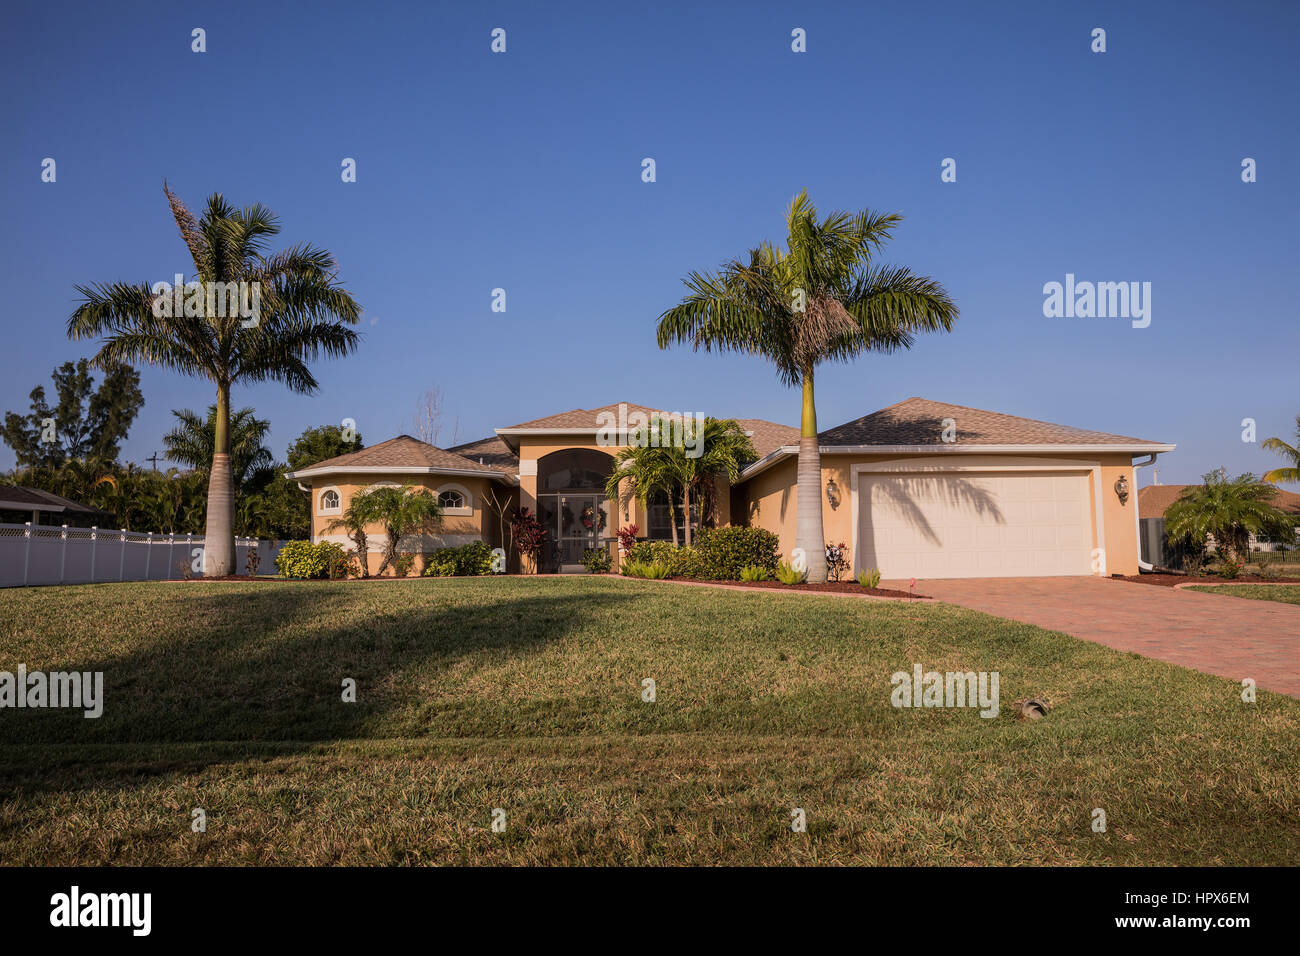 El suroeste de Florida típico de bloque de hormigón de estuco y casa en el campo, con palmeras, plantas tropicales y flores, césped y pinos. f Foto de stock